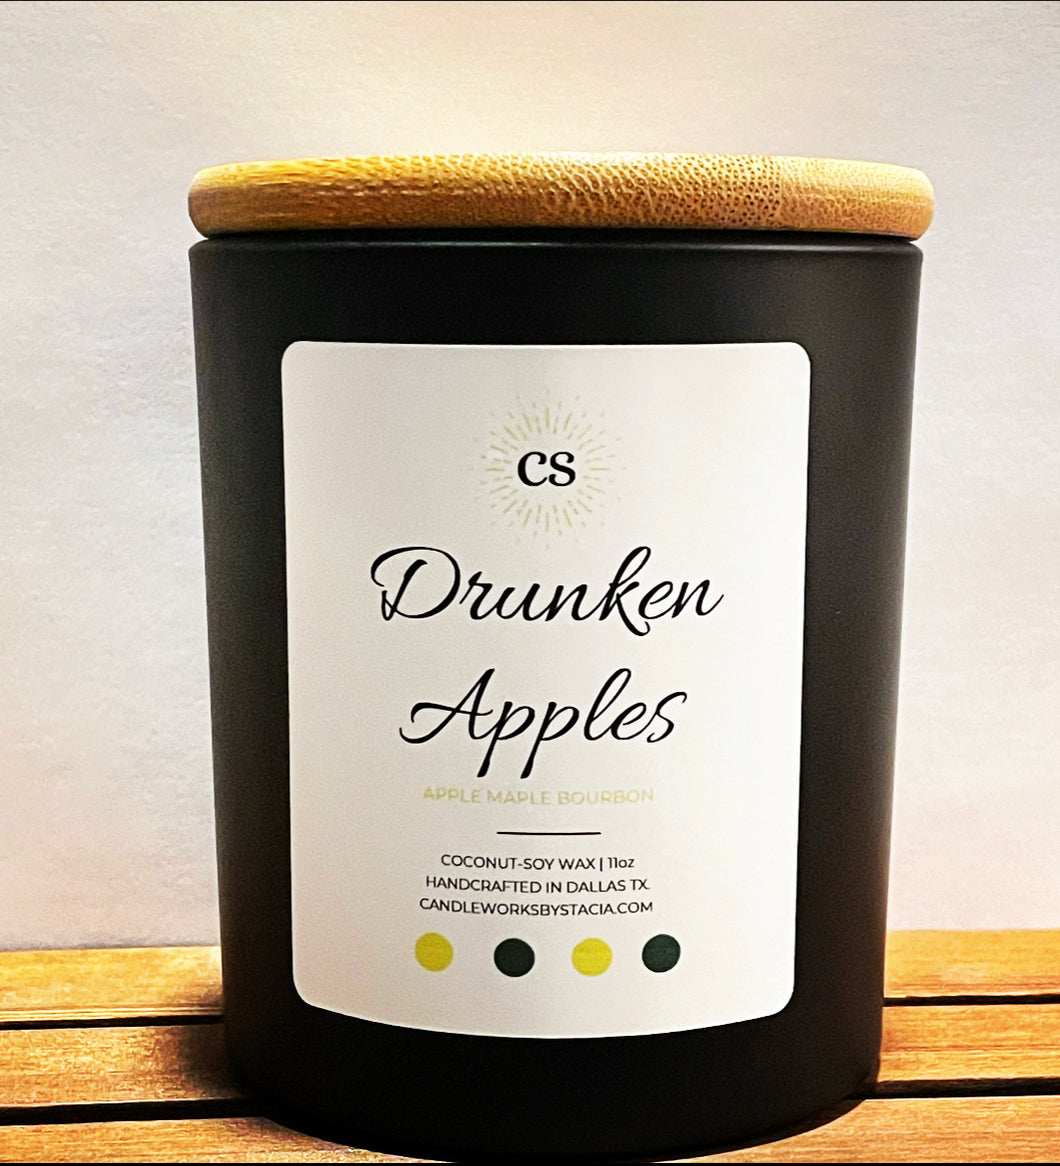 Drunken Apples